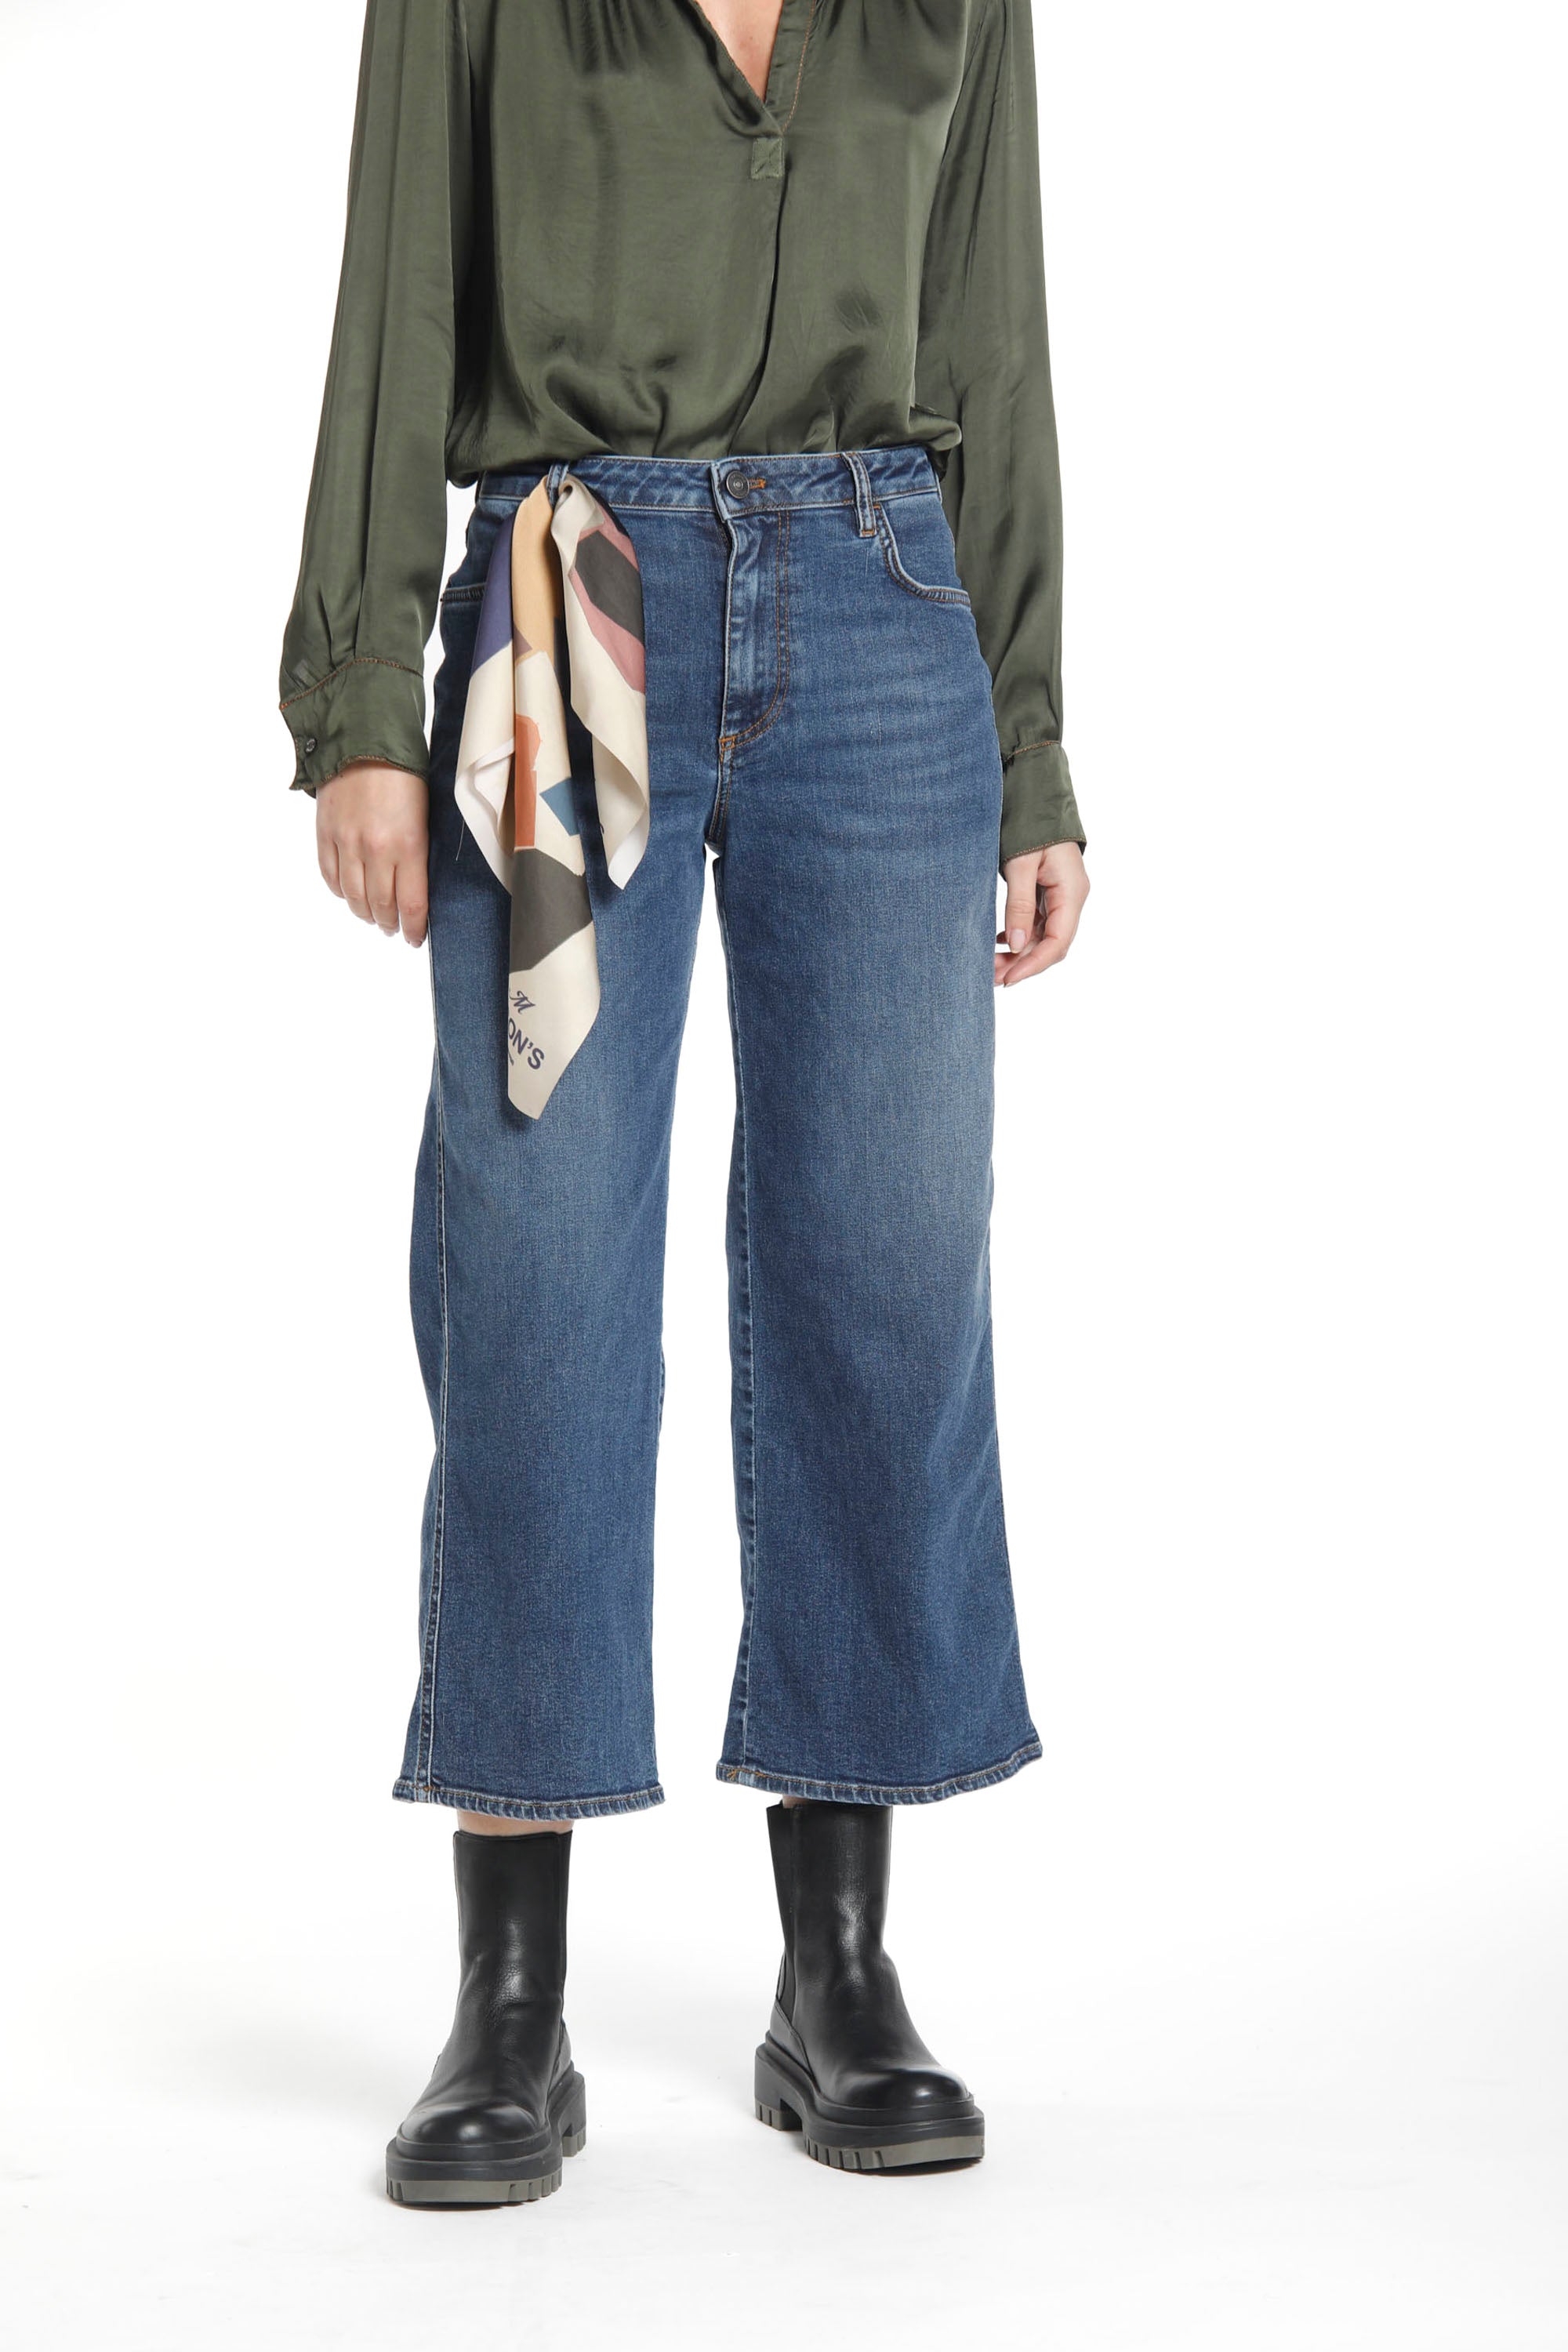 Immagine 1 di Pantalone 5 Tasche da donna in denim stretch Colore blu navy Modello Samantha di Mason’s 